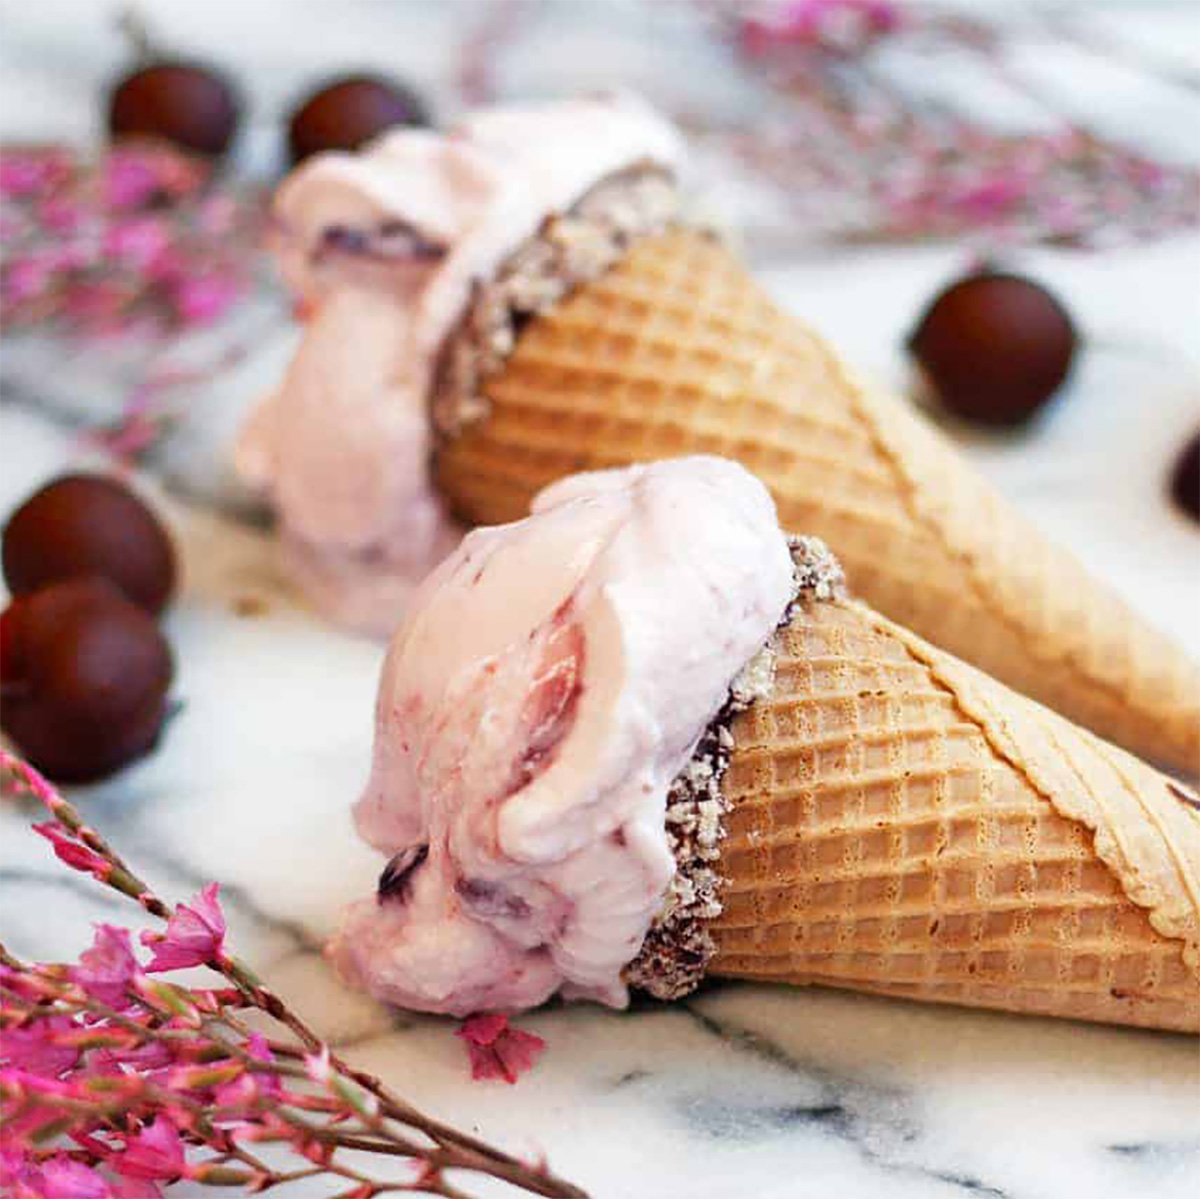 homemade cherry ice cream in cones.